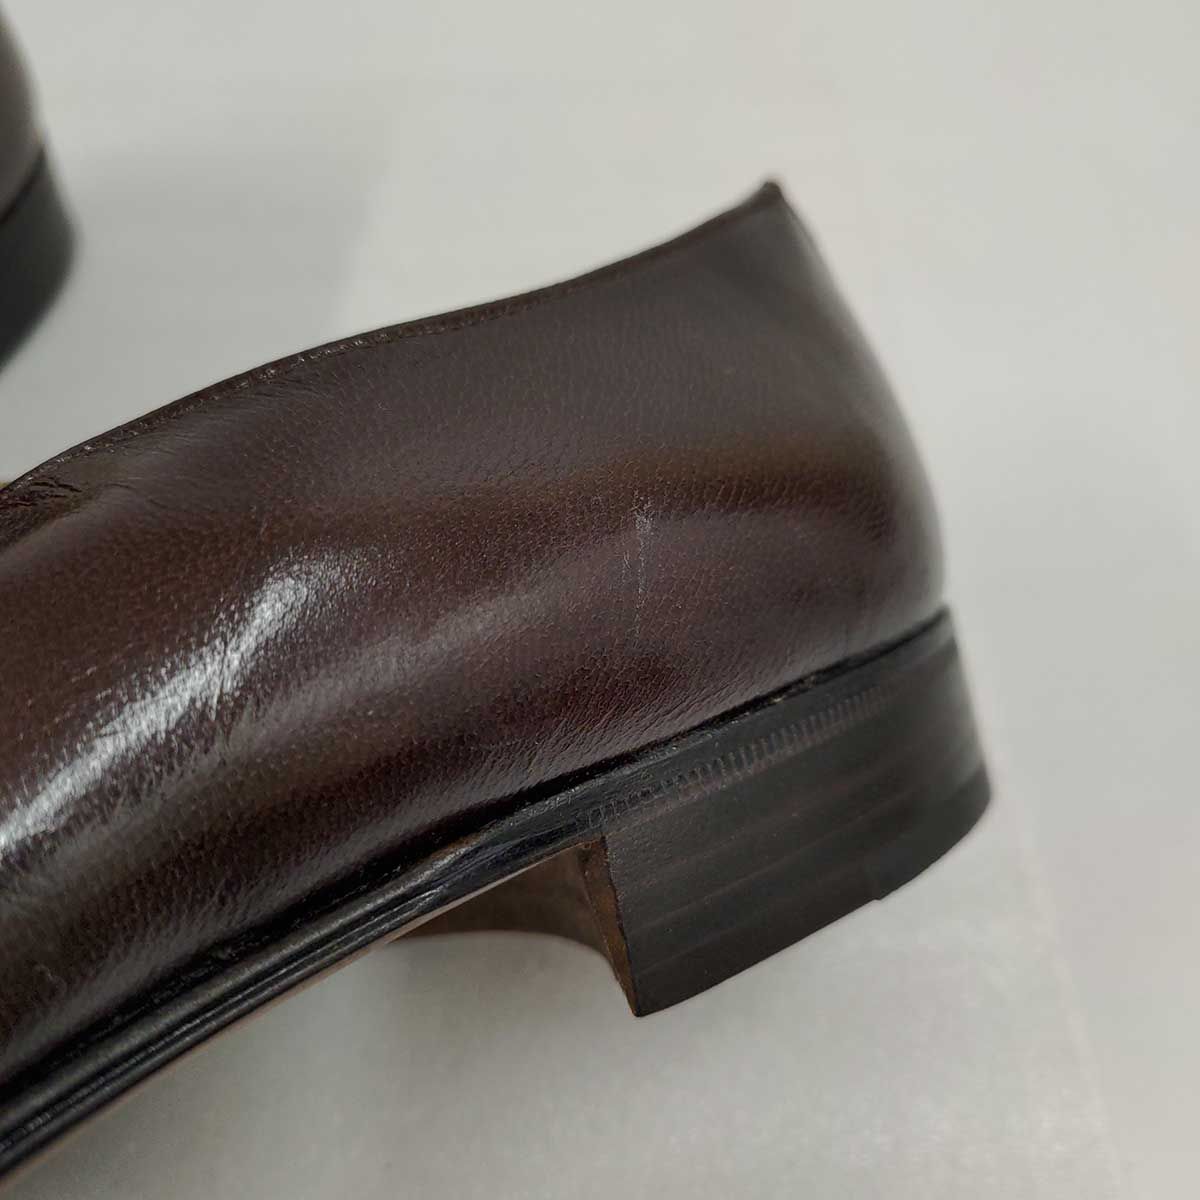 MORESCHI ローファー クロコダイル シューズ イタリア製 ドレスシューズ 革靴 6.5(24.5cm) ブラウン 20411 メンズ モレスキー